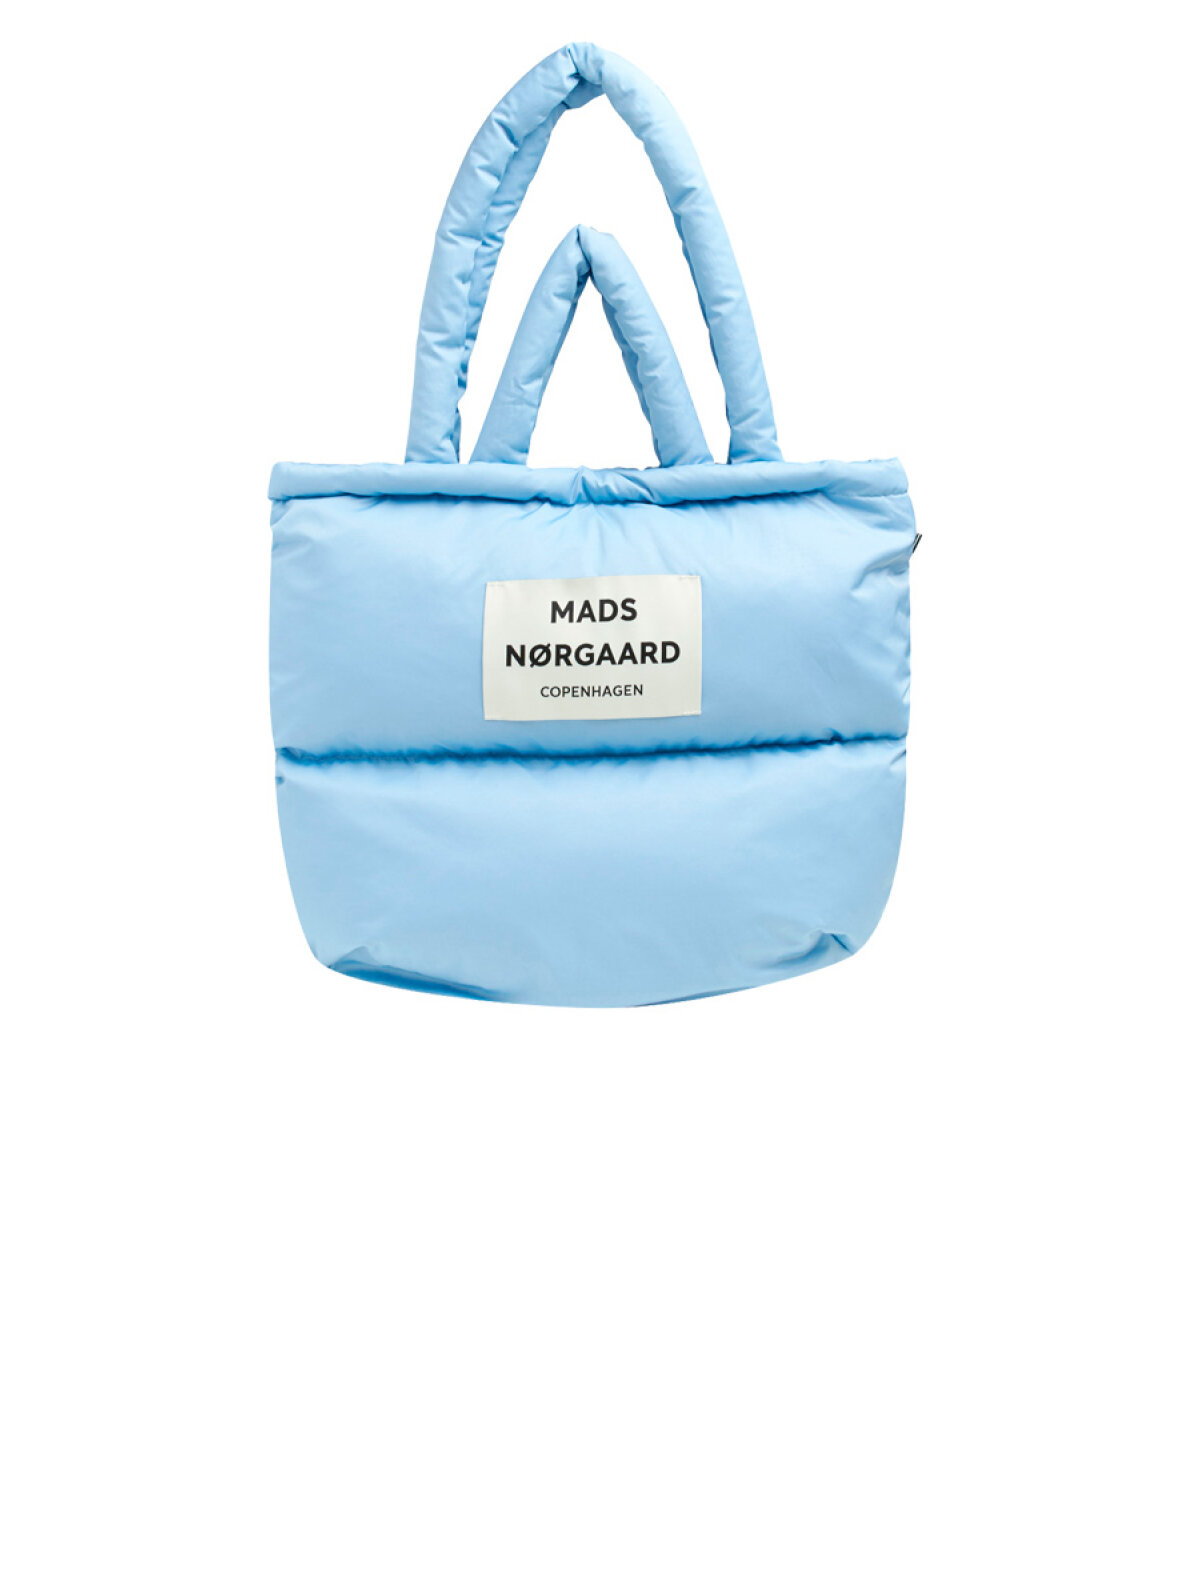 Ekspert Besiddelse Diagnose A'POKE - Mads Nørgaard Pillow Bag Forever Blue - Shop dun taske